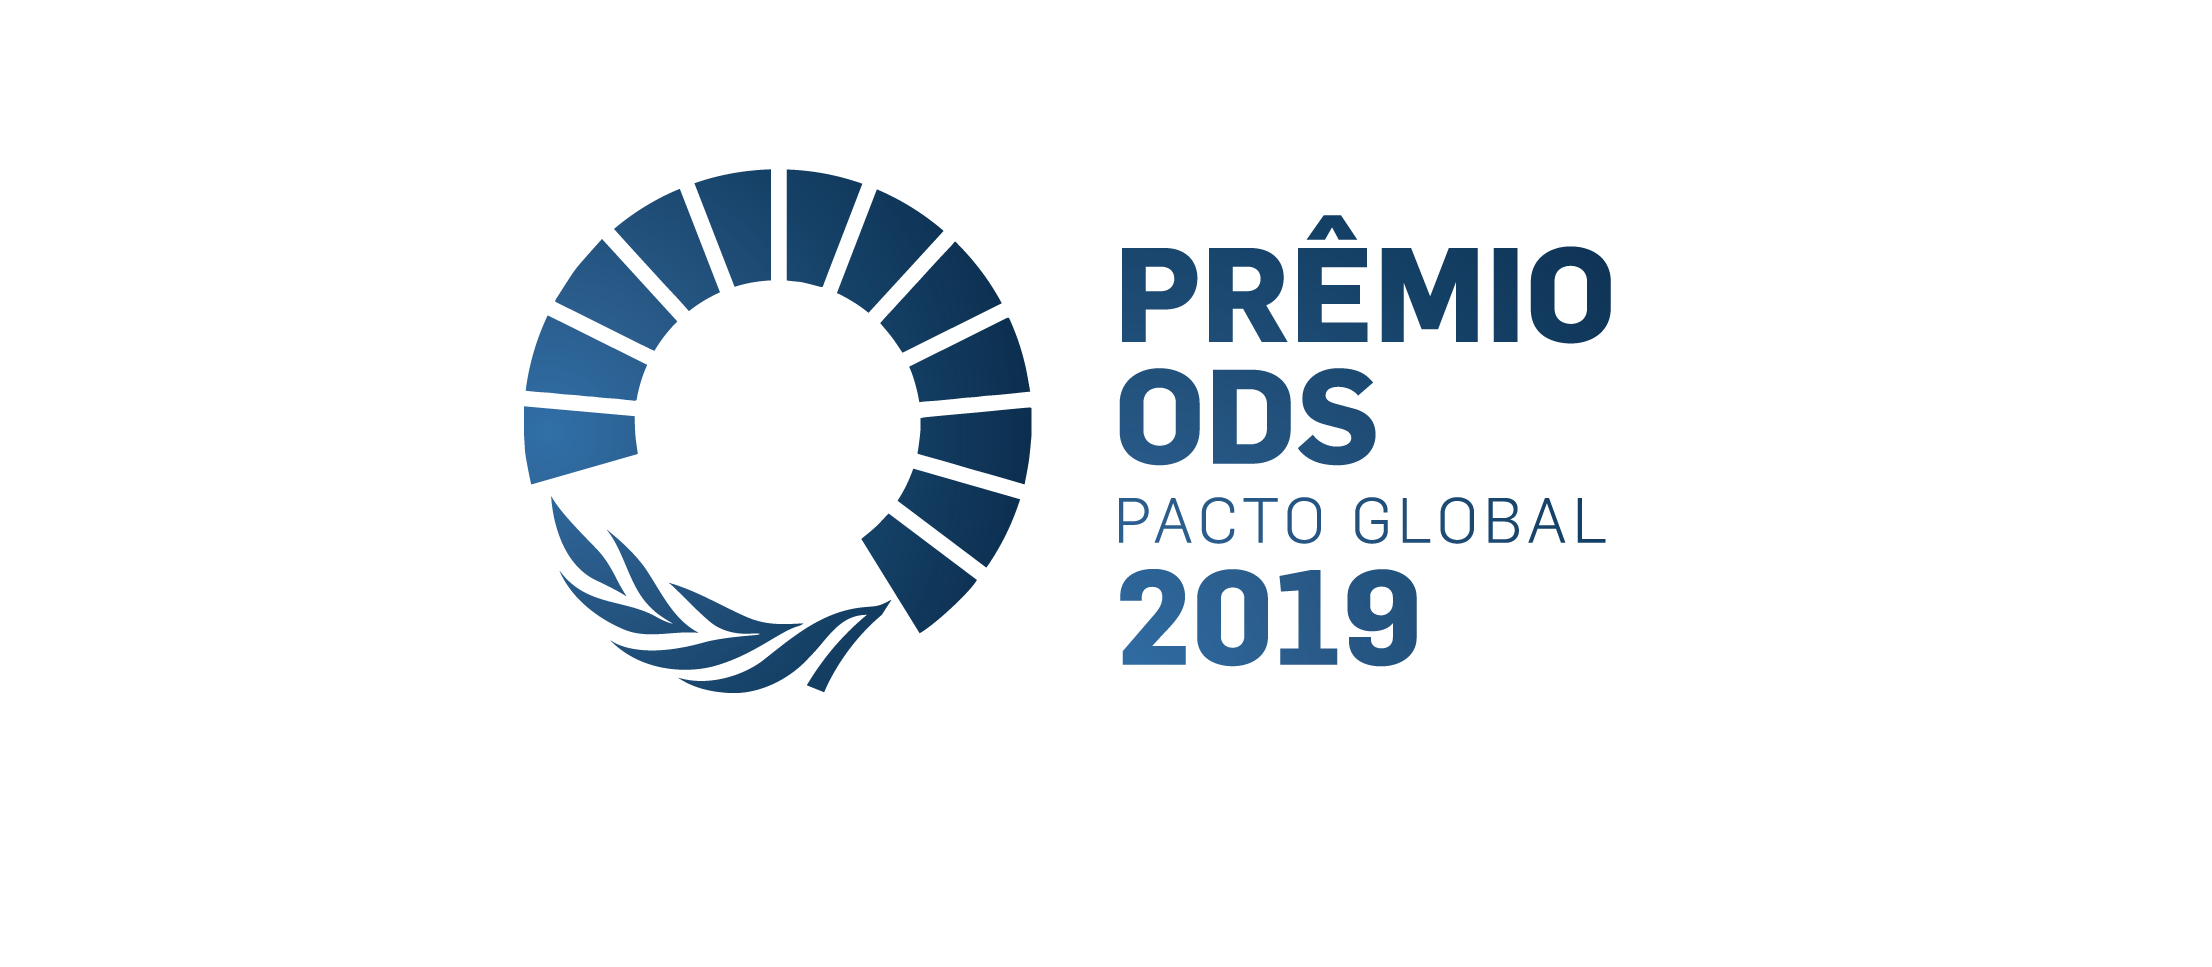 Prêmio ODS Pacto Global: uma competição mundial de sustentabilidade corporativa